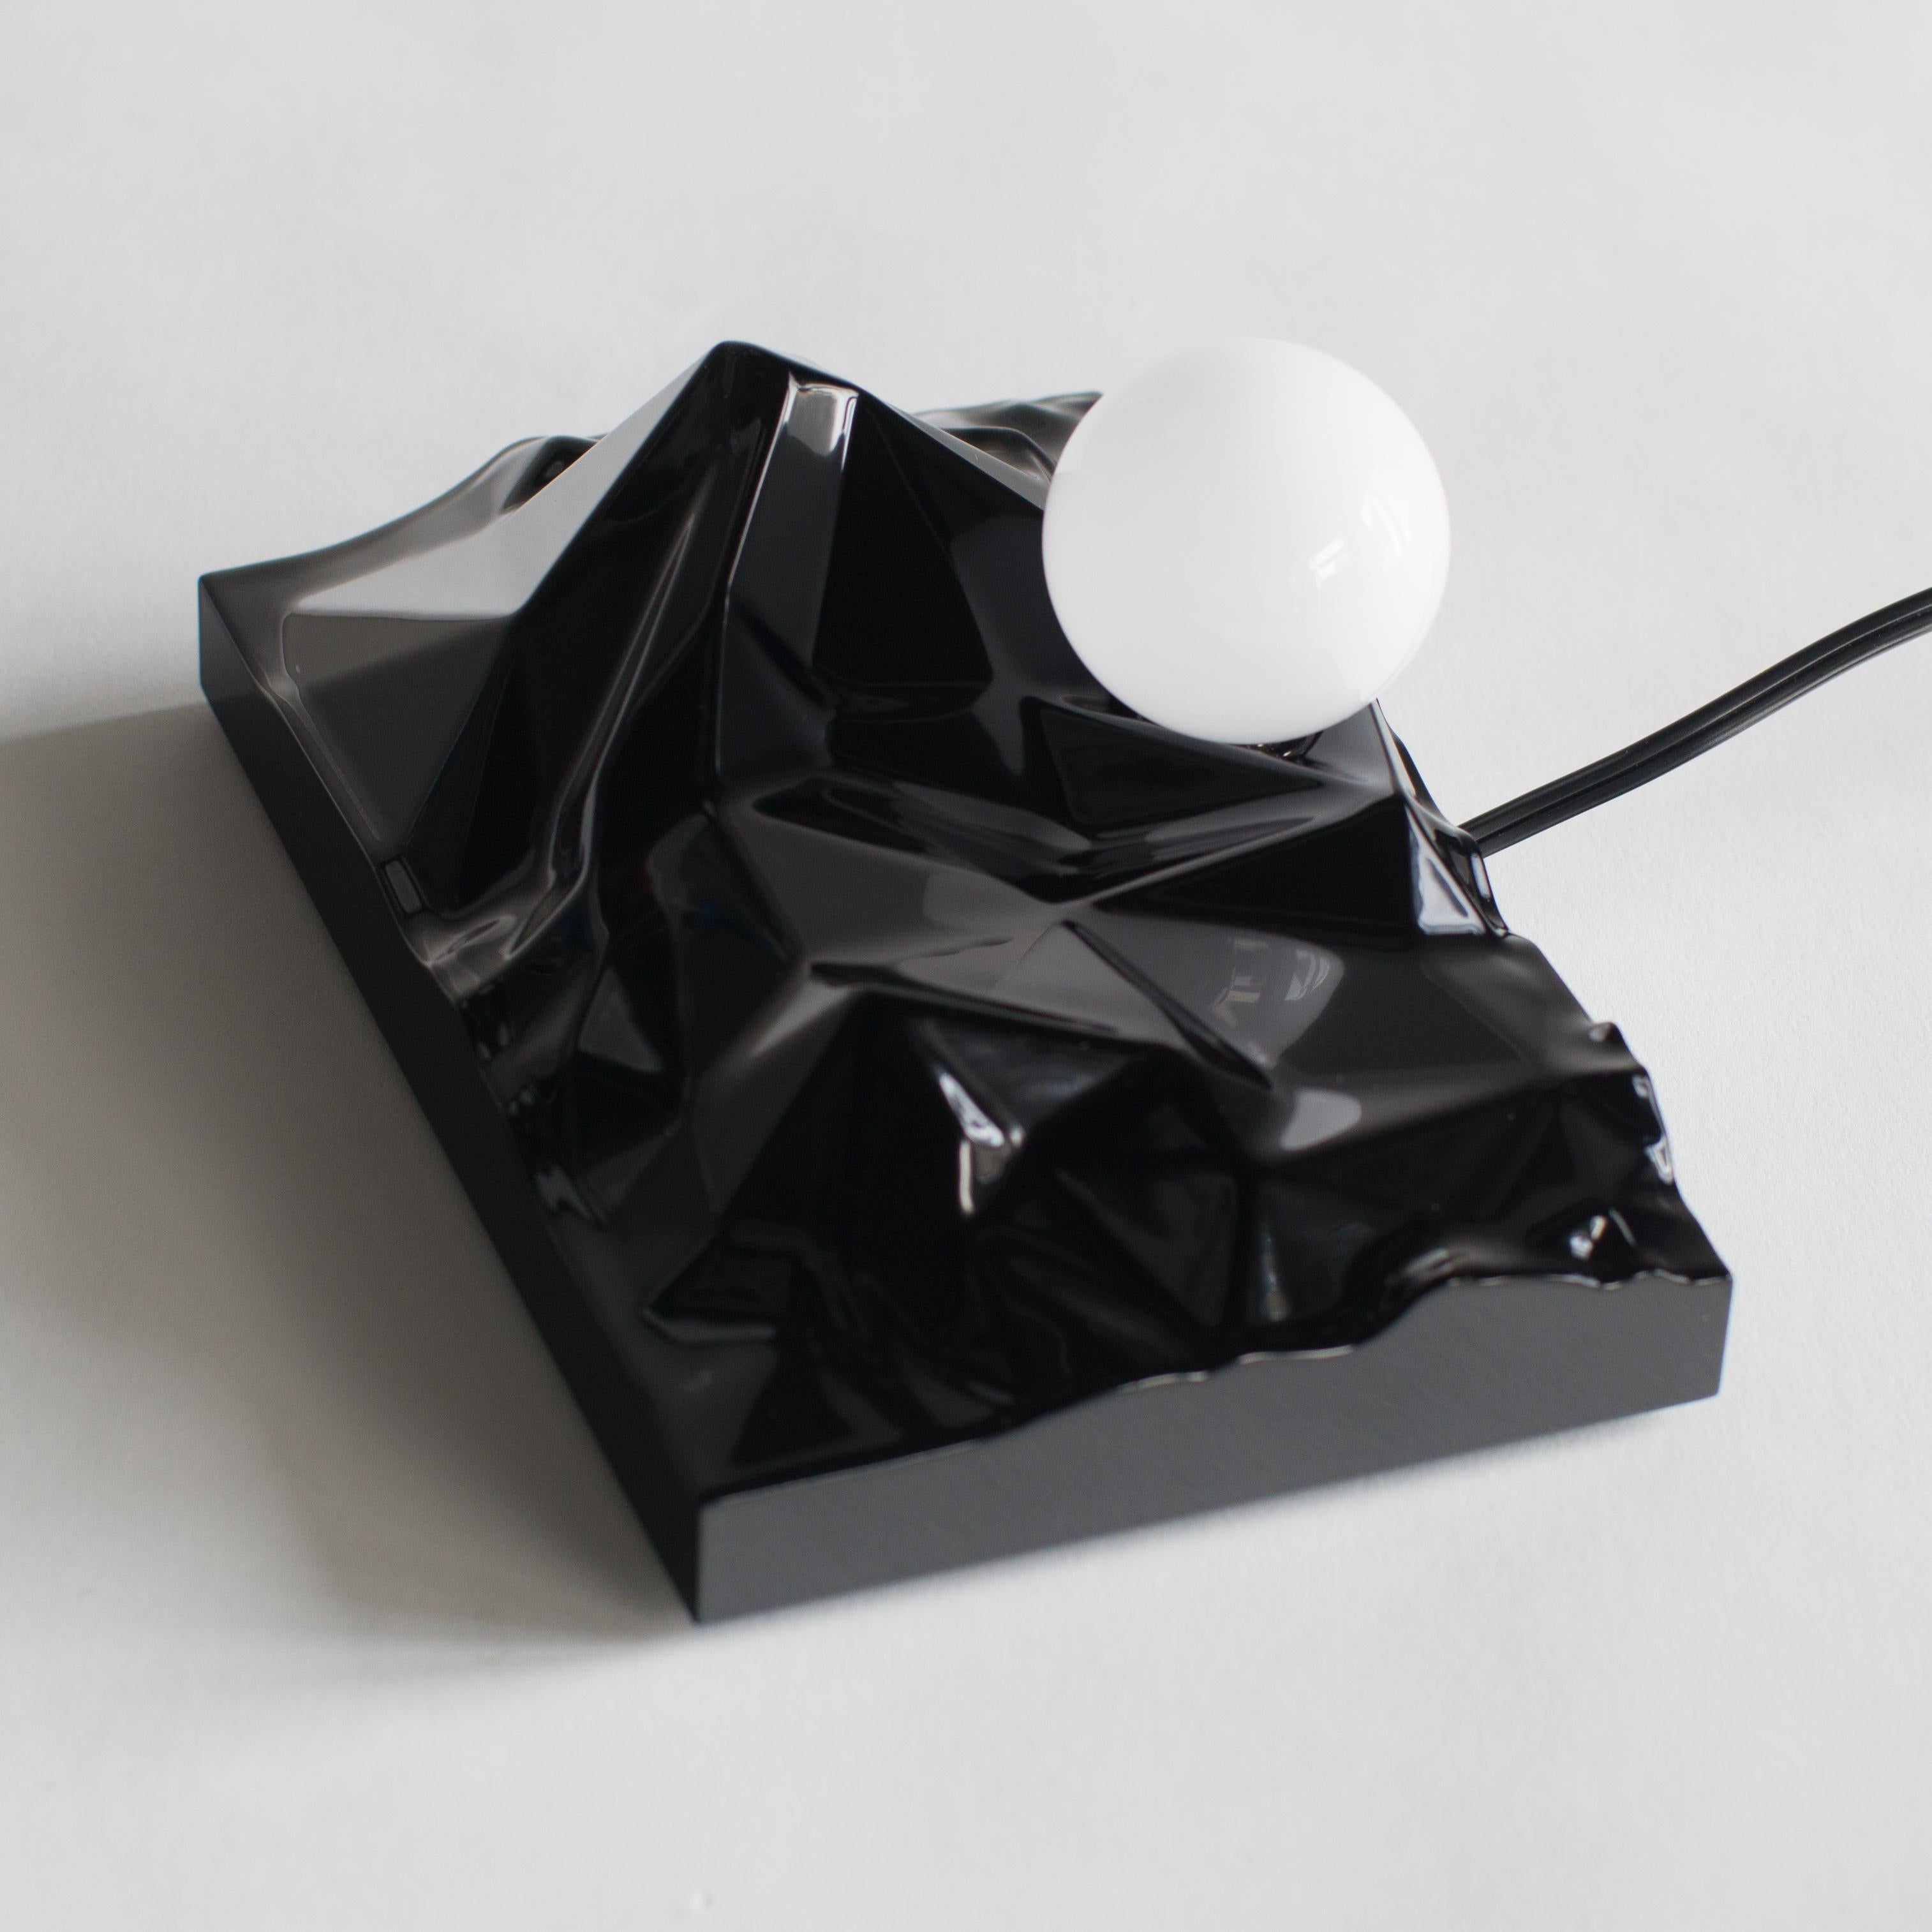 Sunrising Lamp Satoshi Itasaka Urushi Object Contemporary Zen Japanese 3